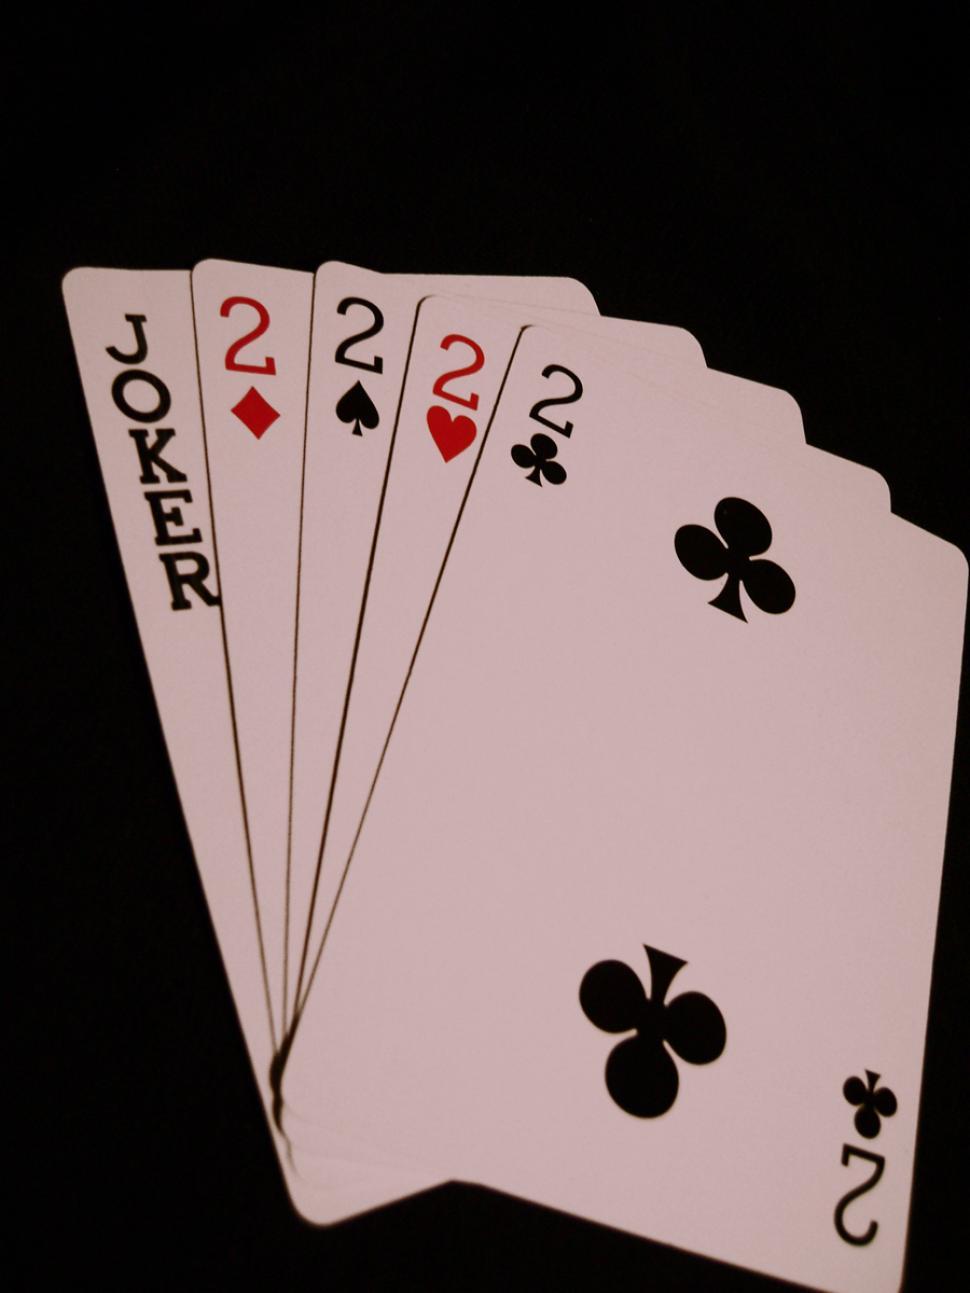 Free Image of Poker Night 